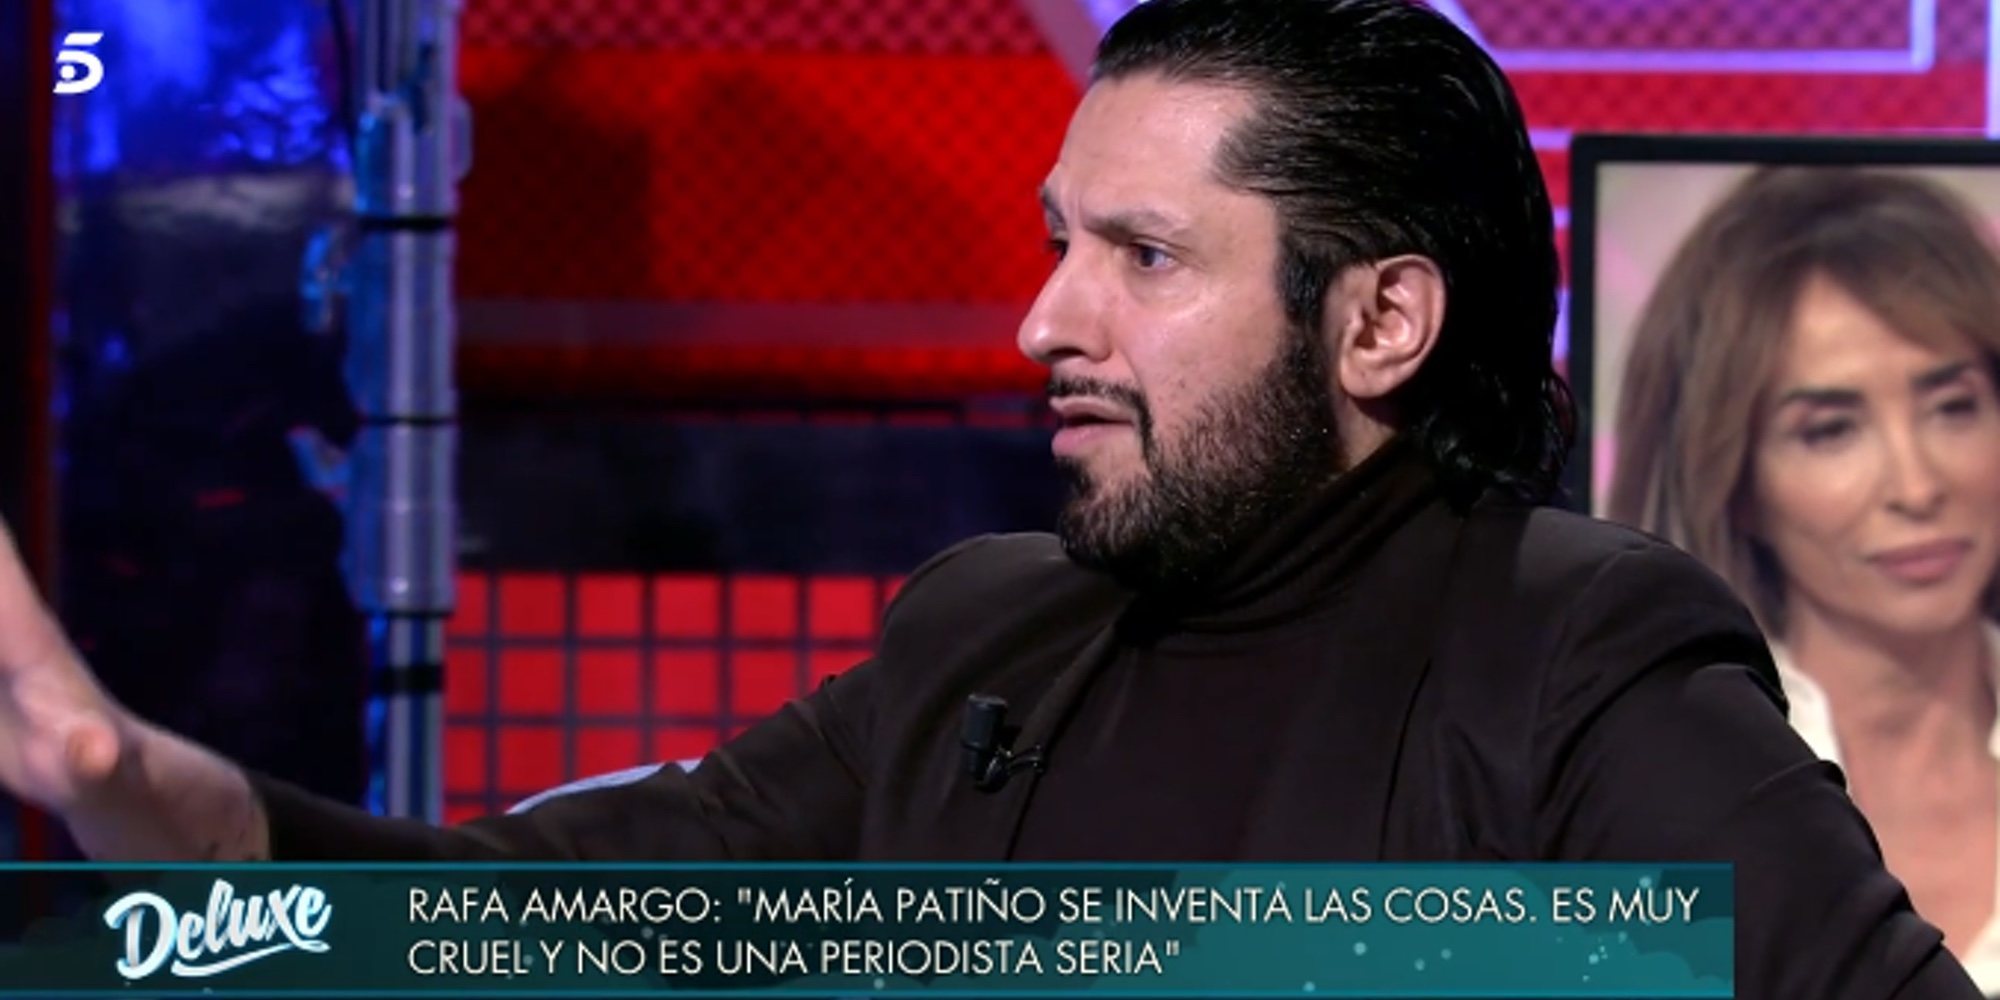 Rafael Amargo vuelve a atacar a María Patiño: "Es maquiavélica y la que mueve los hilos"